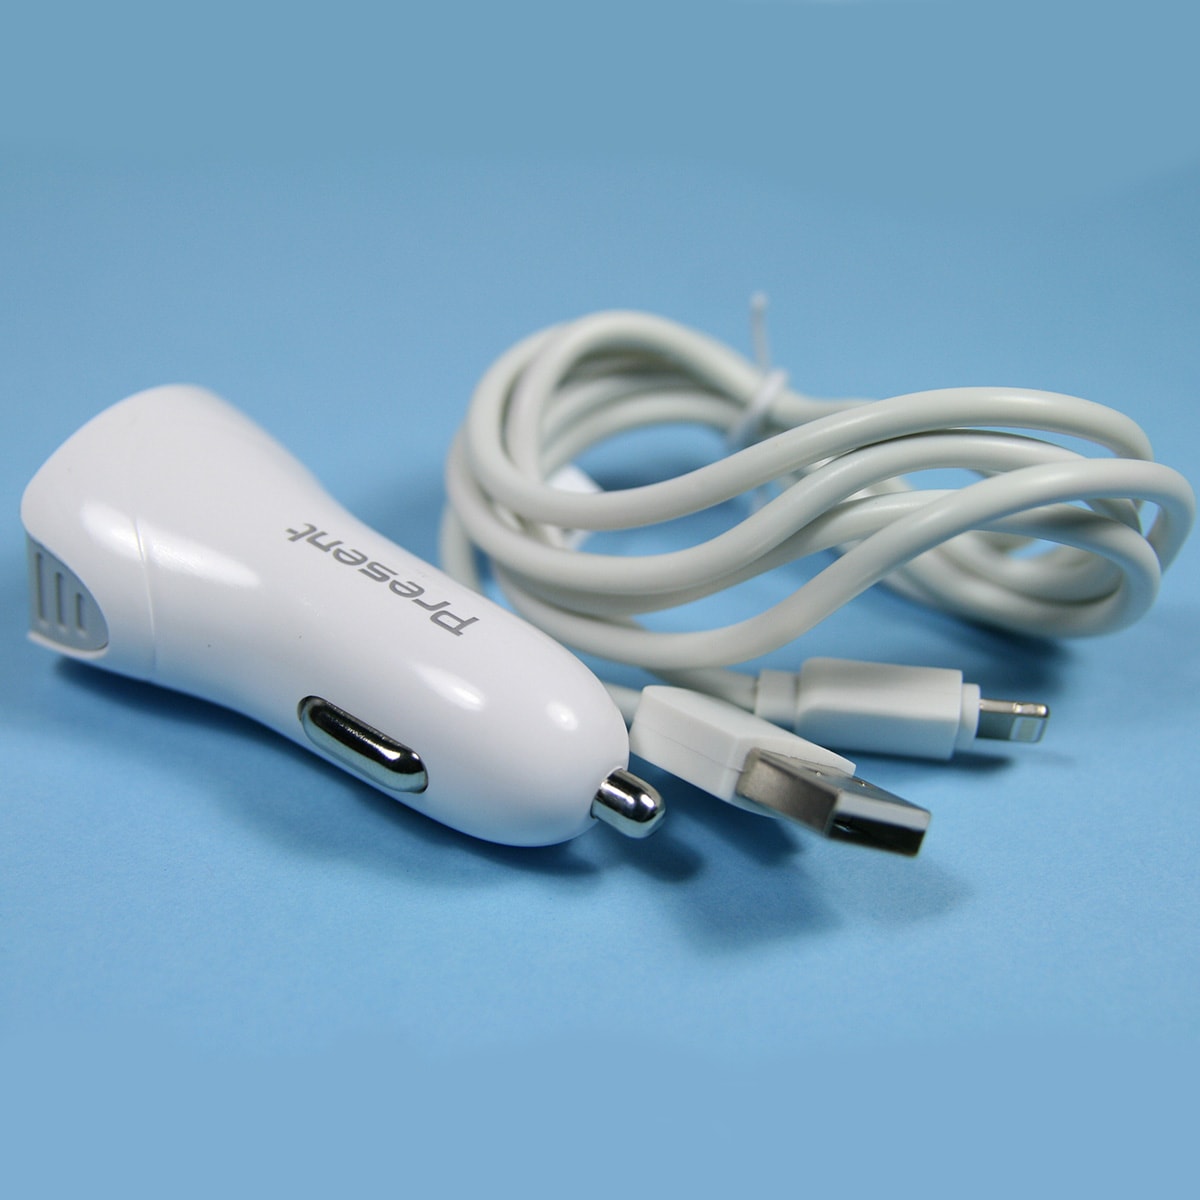 Kit de chargeur USB voiture 12V output 5V 1.5A pour iPhone Chargeur + câble.